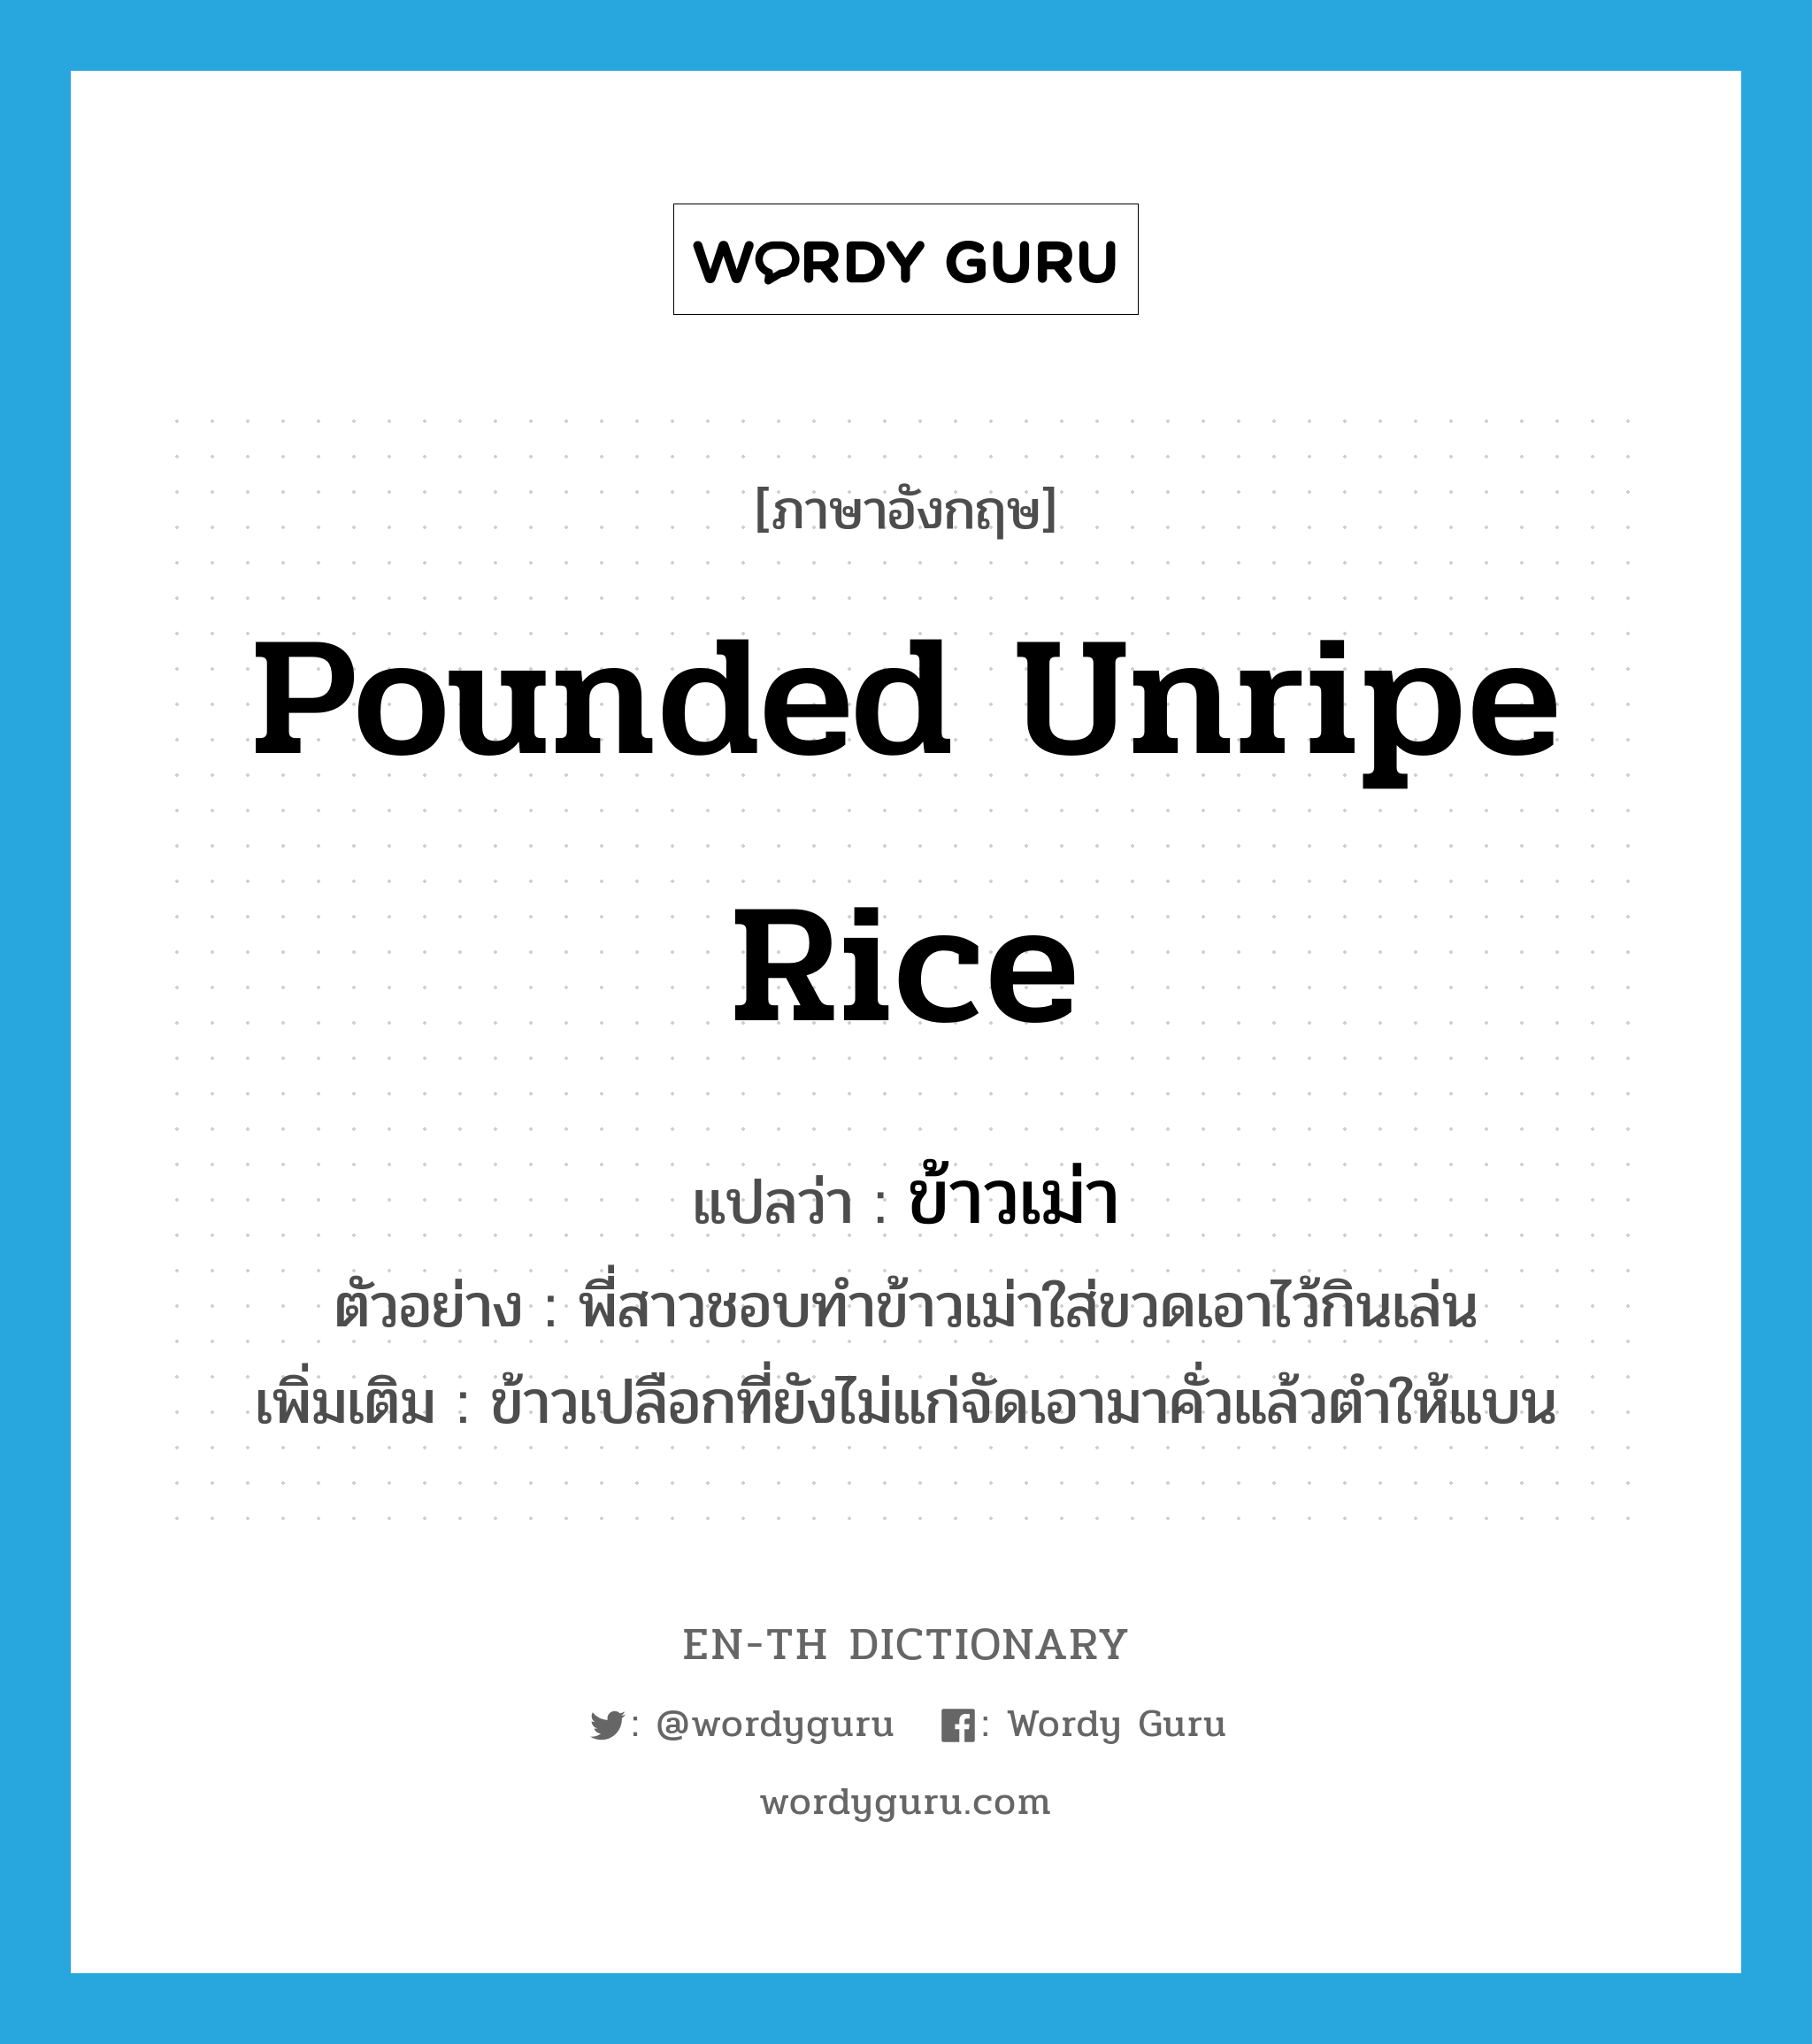 ข้าวเม่า ภาษาอังกฤษ?, คำศัพท์ภาษาอังกฤษ ข้าวเม่า แปลว่า pounded unripe rice ประเภท N ตัวอย่าง พี่สาวชอบทำข้าวเม่าใส่ขวดเอาไว้กินเล่น เพิ่มเติม ข้าวเปลือกที่ยังไม่แก่จัดเอามาคั่วแล้วตำให้แบน หมวด N